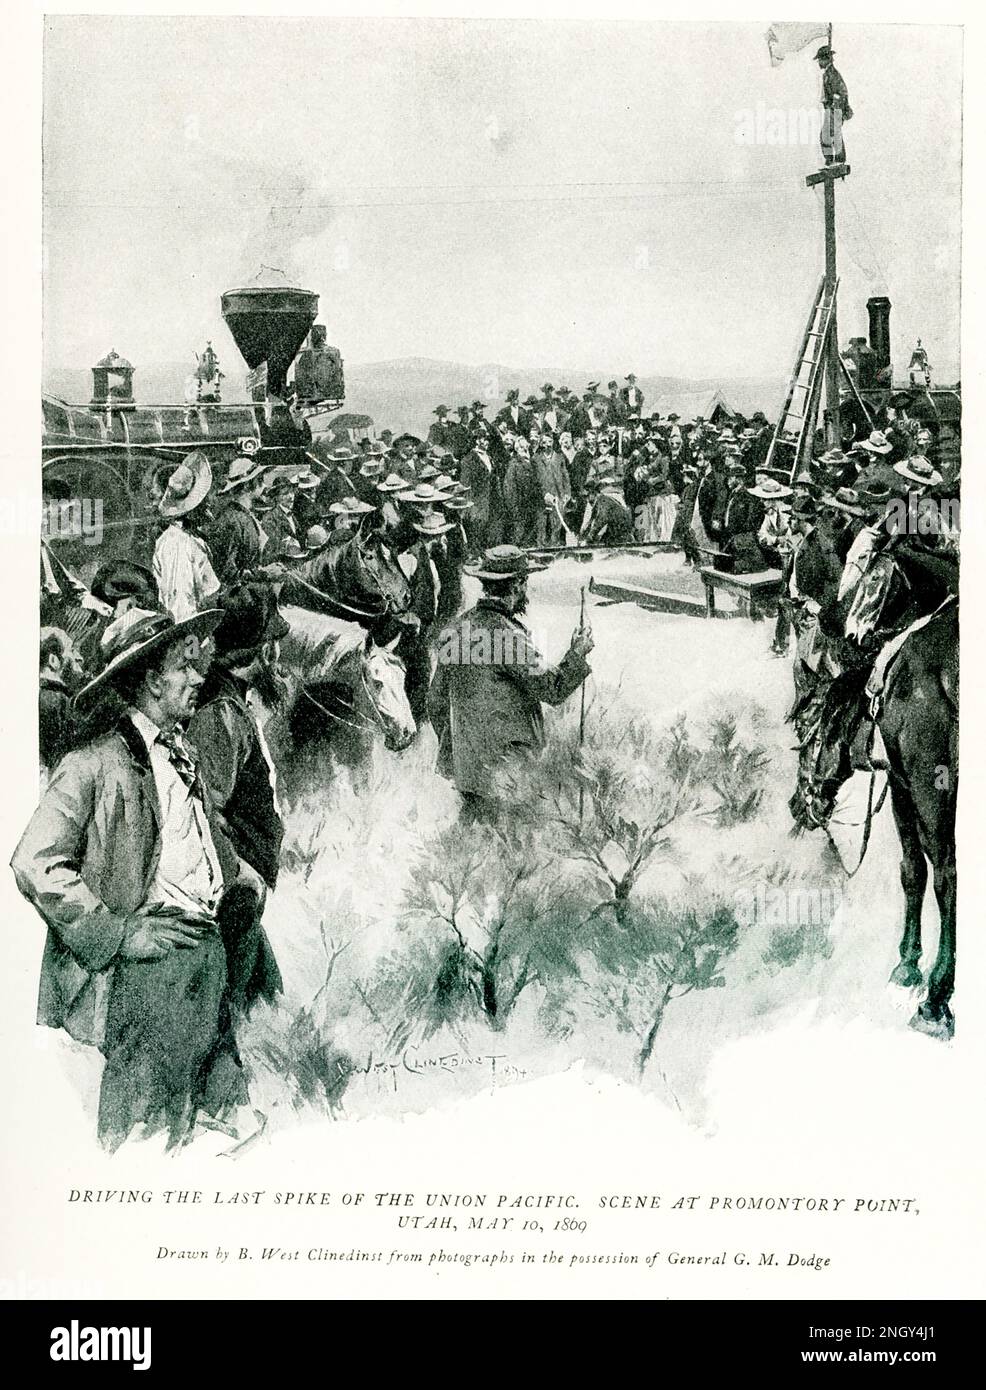 Die Überschrift Tye 1896 lautet: "Fahren der letzten Spike der Union Pacific Szene am Promontory Point Utah 10 1869. Mai - gezeichnet von B West Clinedinst auf dem Foto im Besitz von General G M Dodge." Benjamin West Clinedinst war ein amerikanischer Buchillustrierer und Porträtmaler. Stockfoto